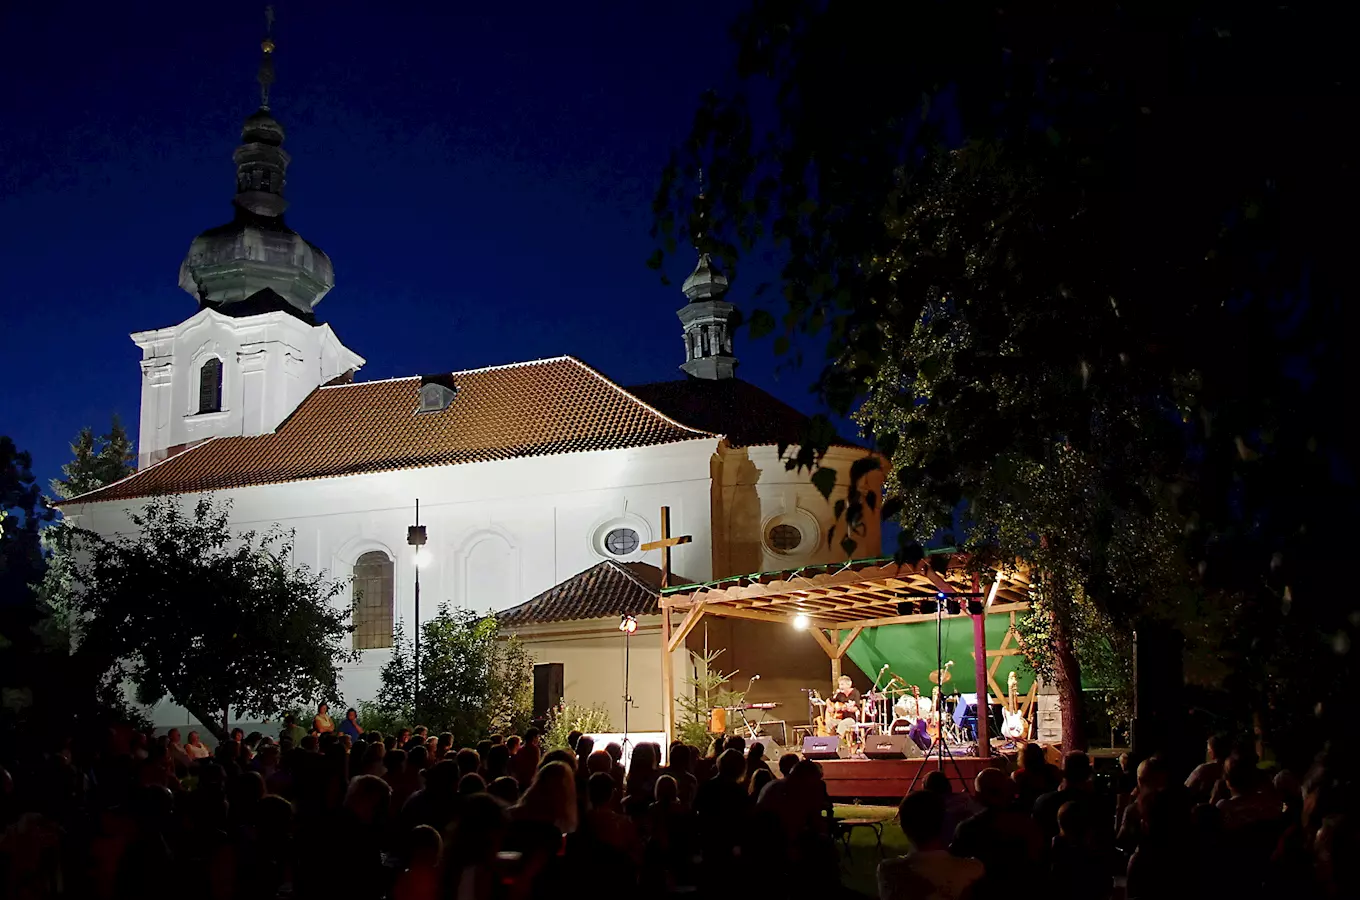 Kostel sv. Bartoloměje v Libčicích nad Vltavou